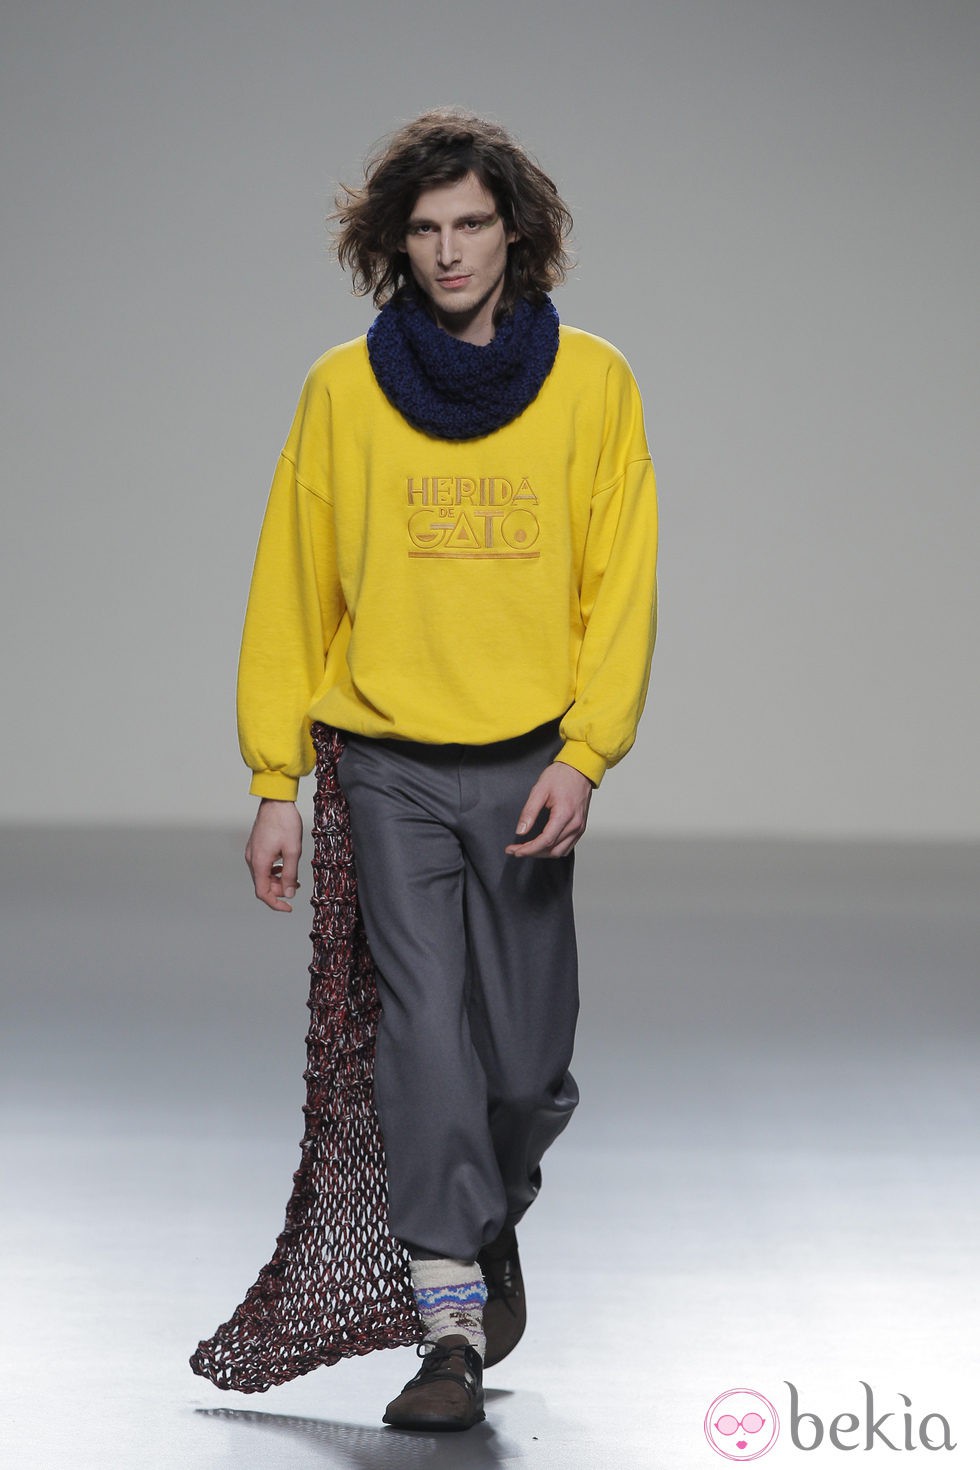 Jersey amarillo de la colección otoño/invierno 2013/2014 de Heridadegato en El Ego de Madrid Fashion Week